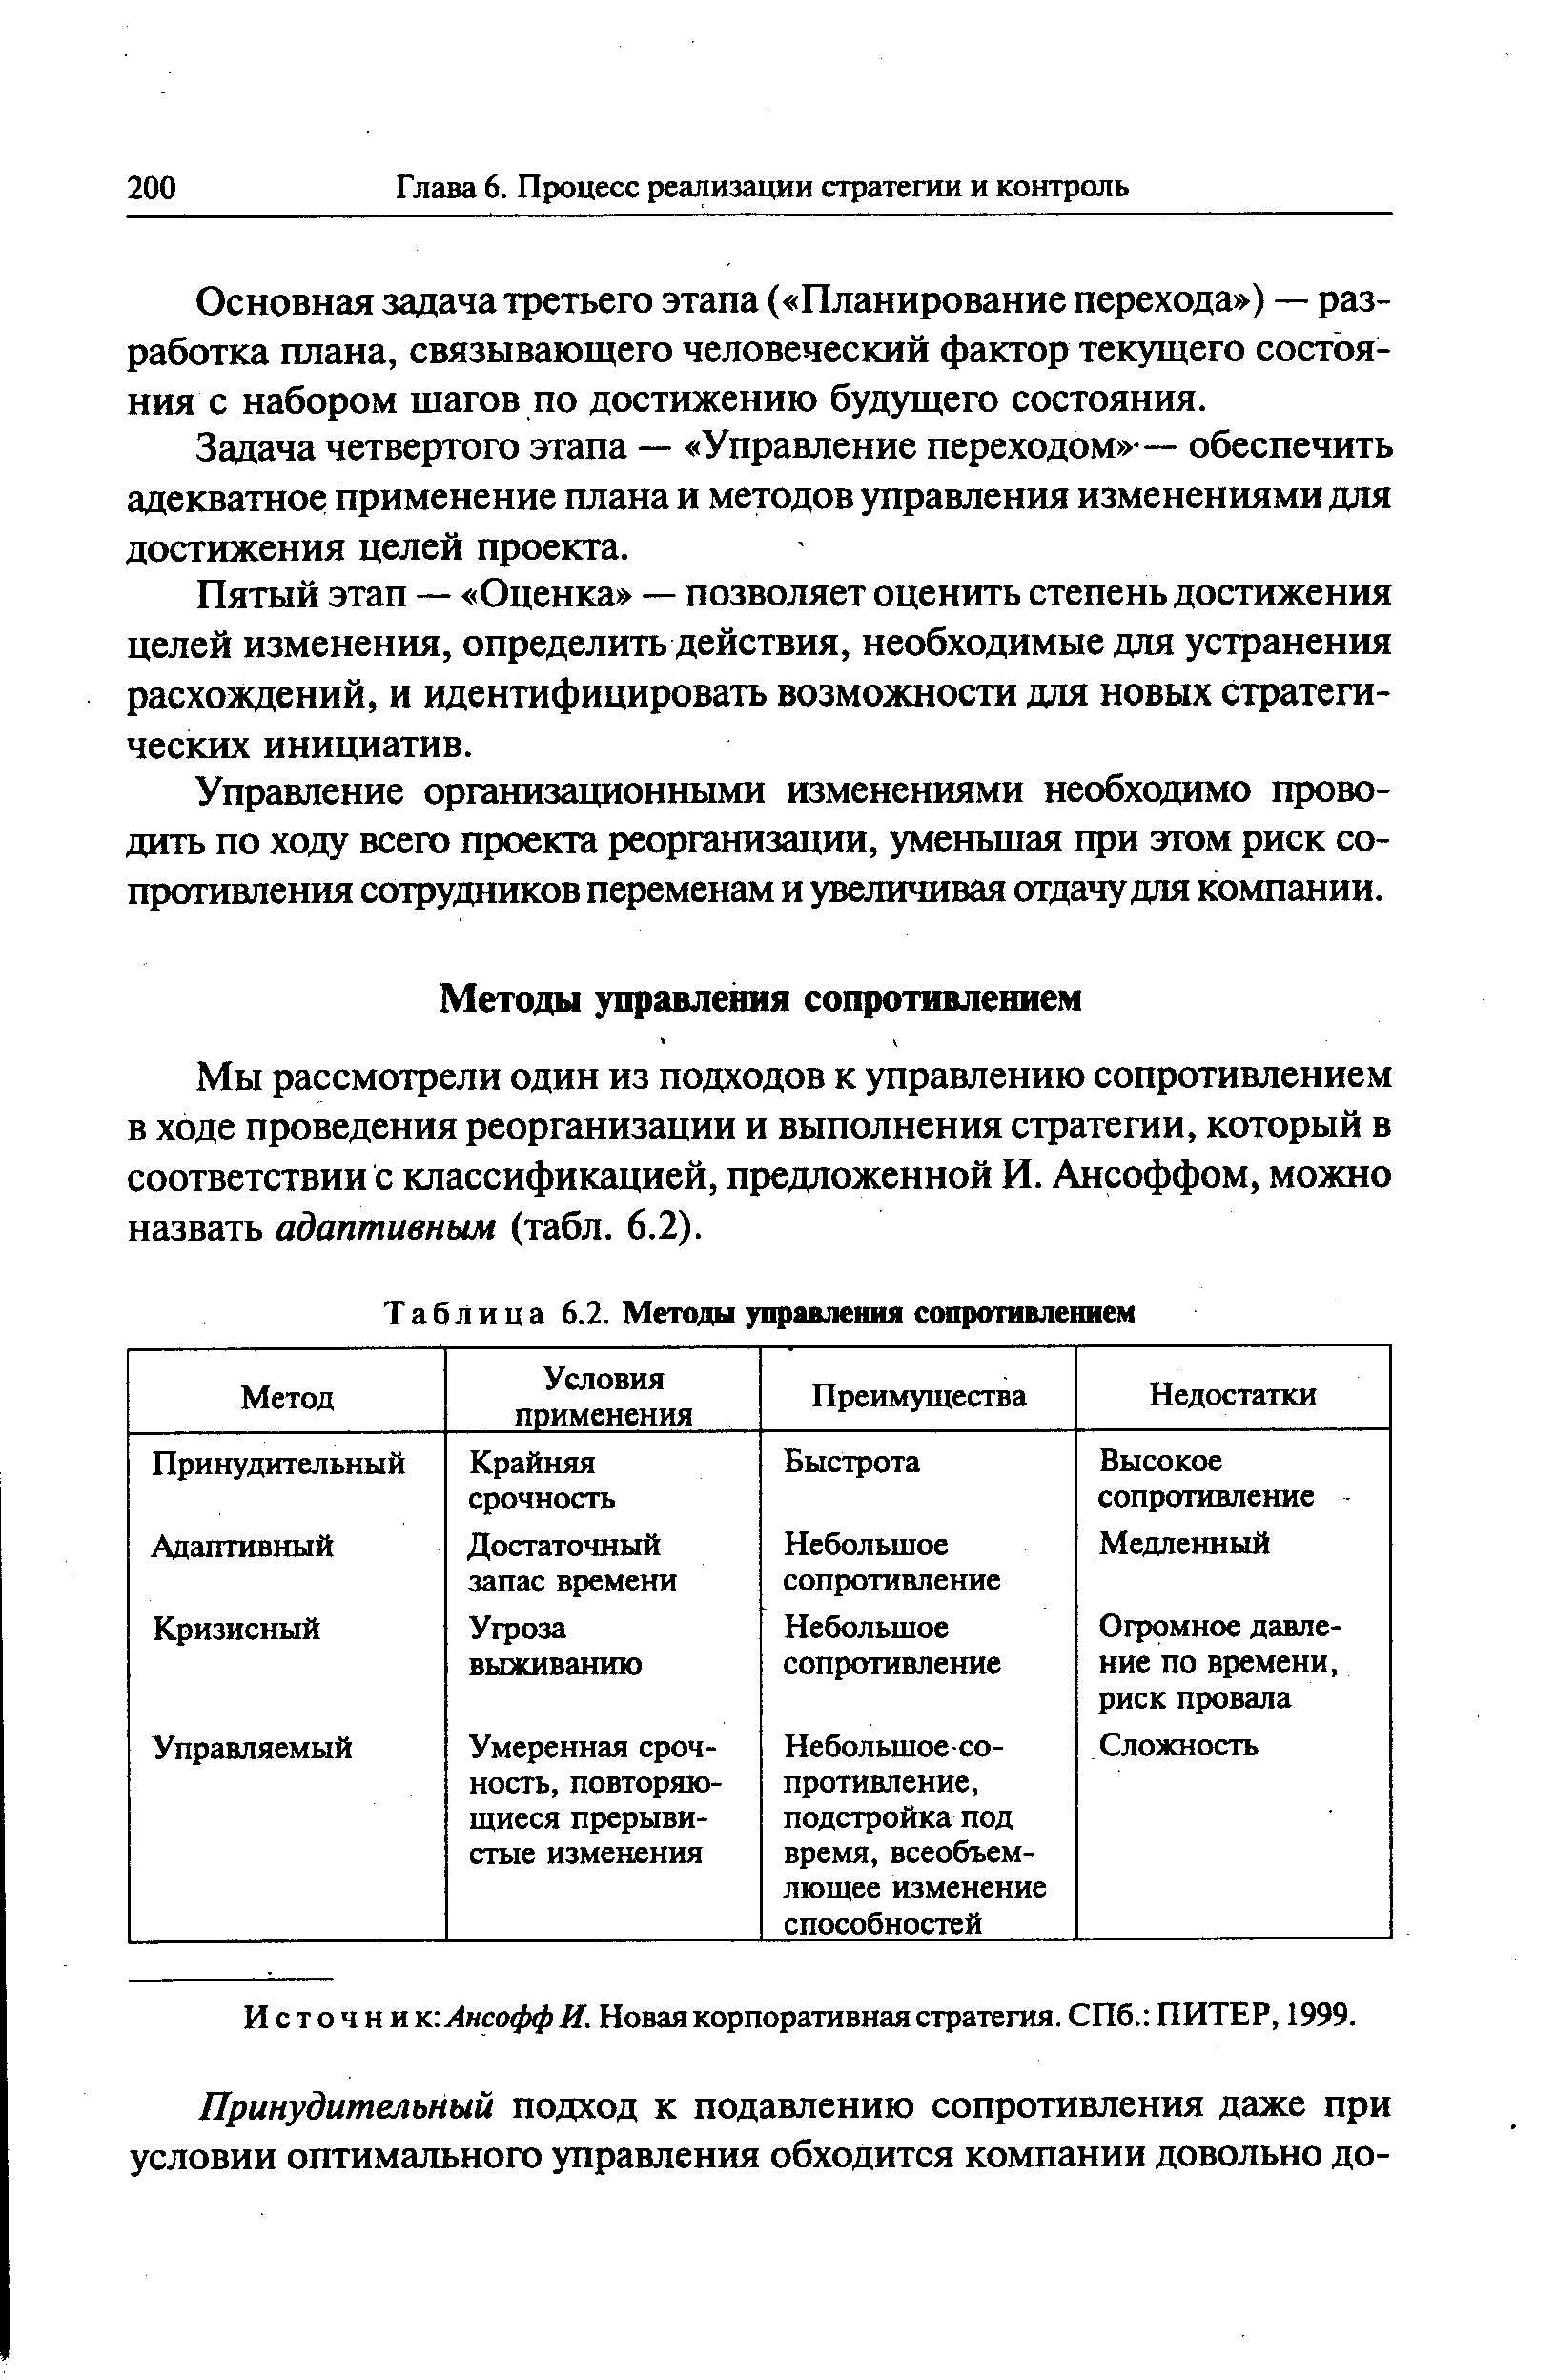 И с т о ч н и к Ансофф И. Новая корпоративная стратегия. СПб. ПИТЕР, 1999.
